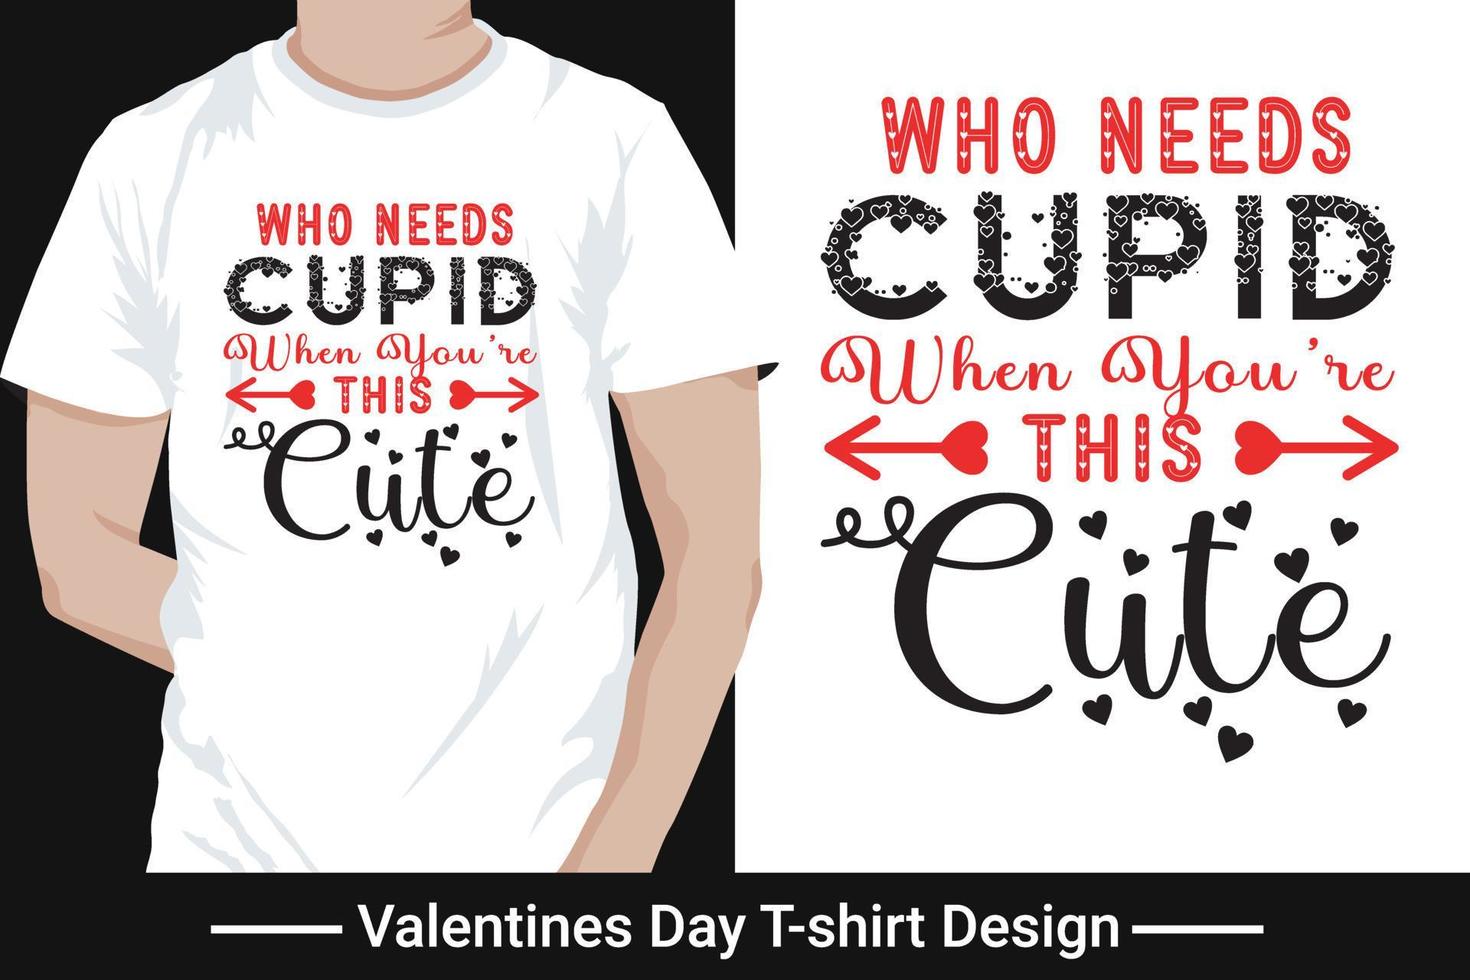 diseño gráfico de camisetas, vector de tipografía del día de San Valentín para camisetas